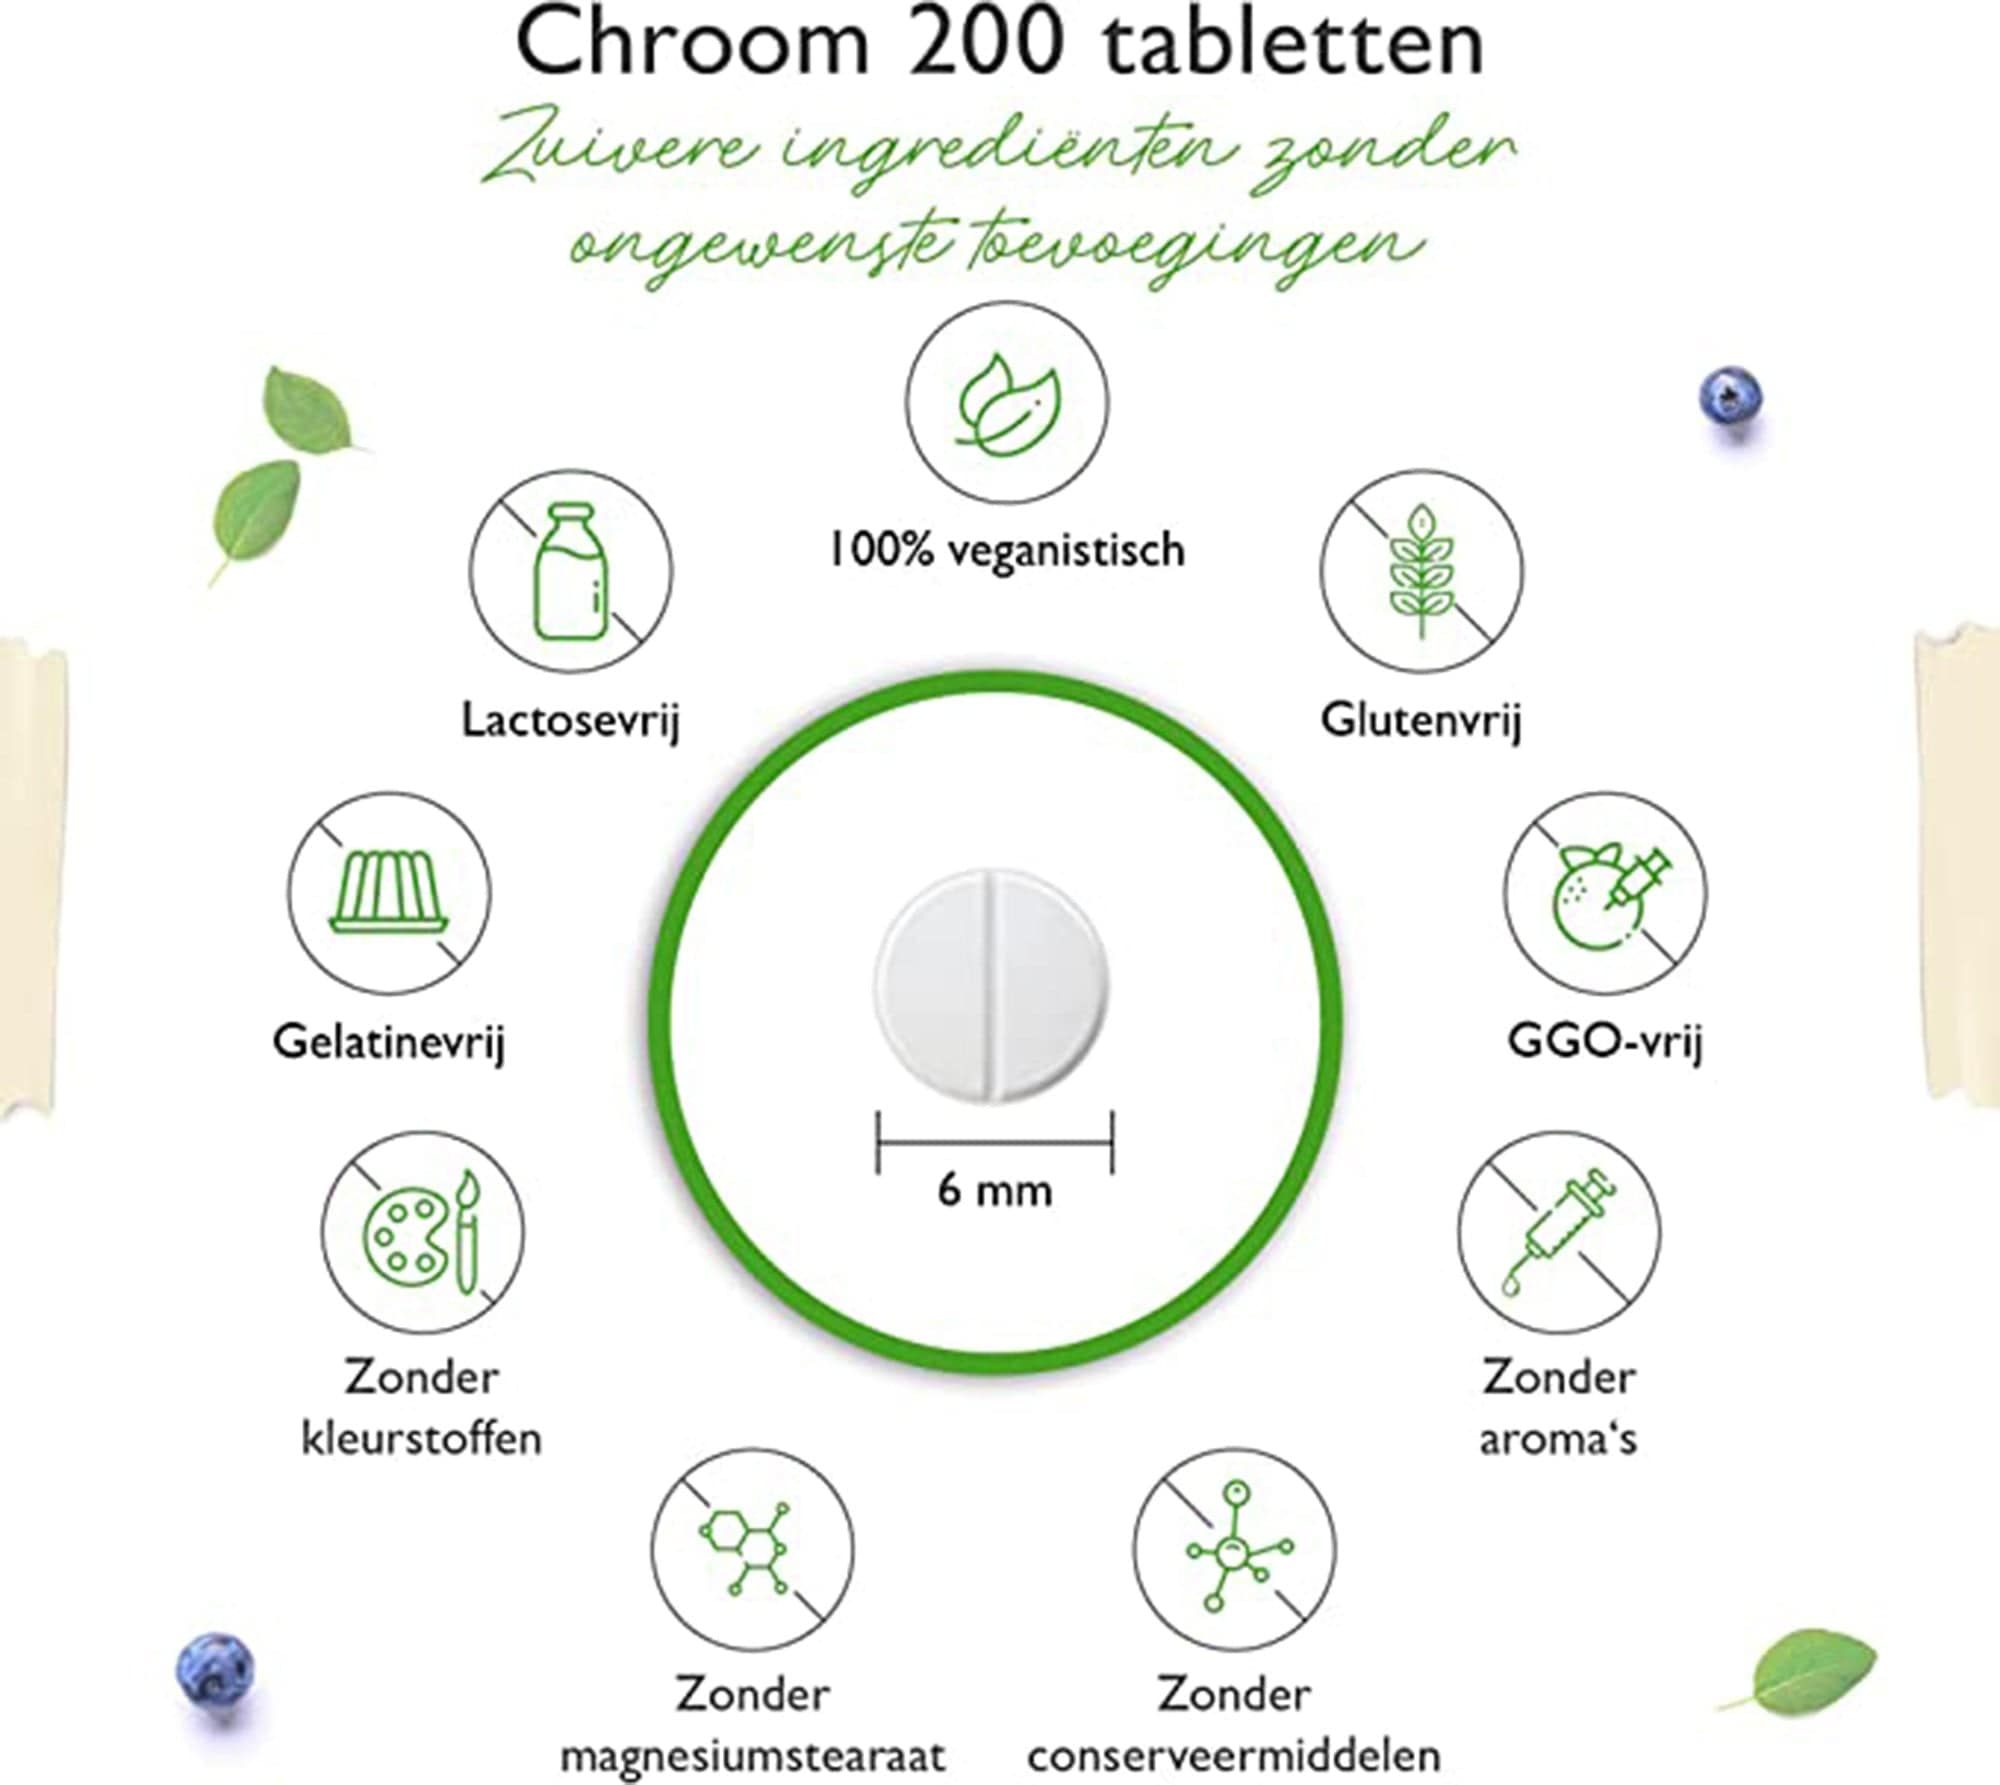 Vit4ever Chromium Picolinate - 200 mcg zuiver chroom per tablet - 365 tabletten in jaarvoorraad - laboratoriumgetest (gehalte aan werkzame stoffen en zuiverheid) - zonder ongewenste toevoegingen - hoge dosering - veganistisch